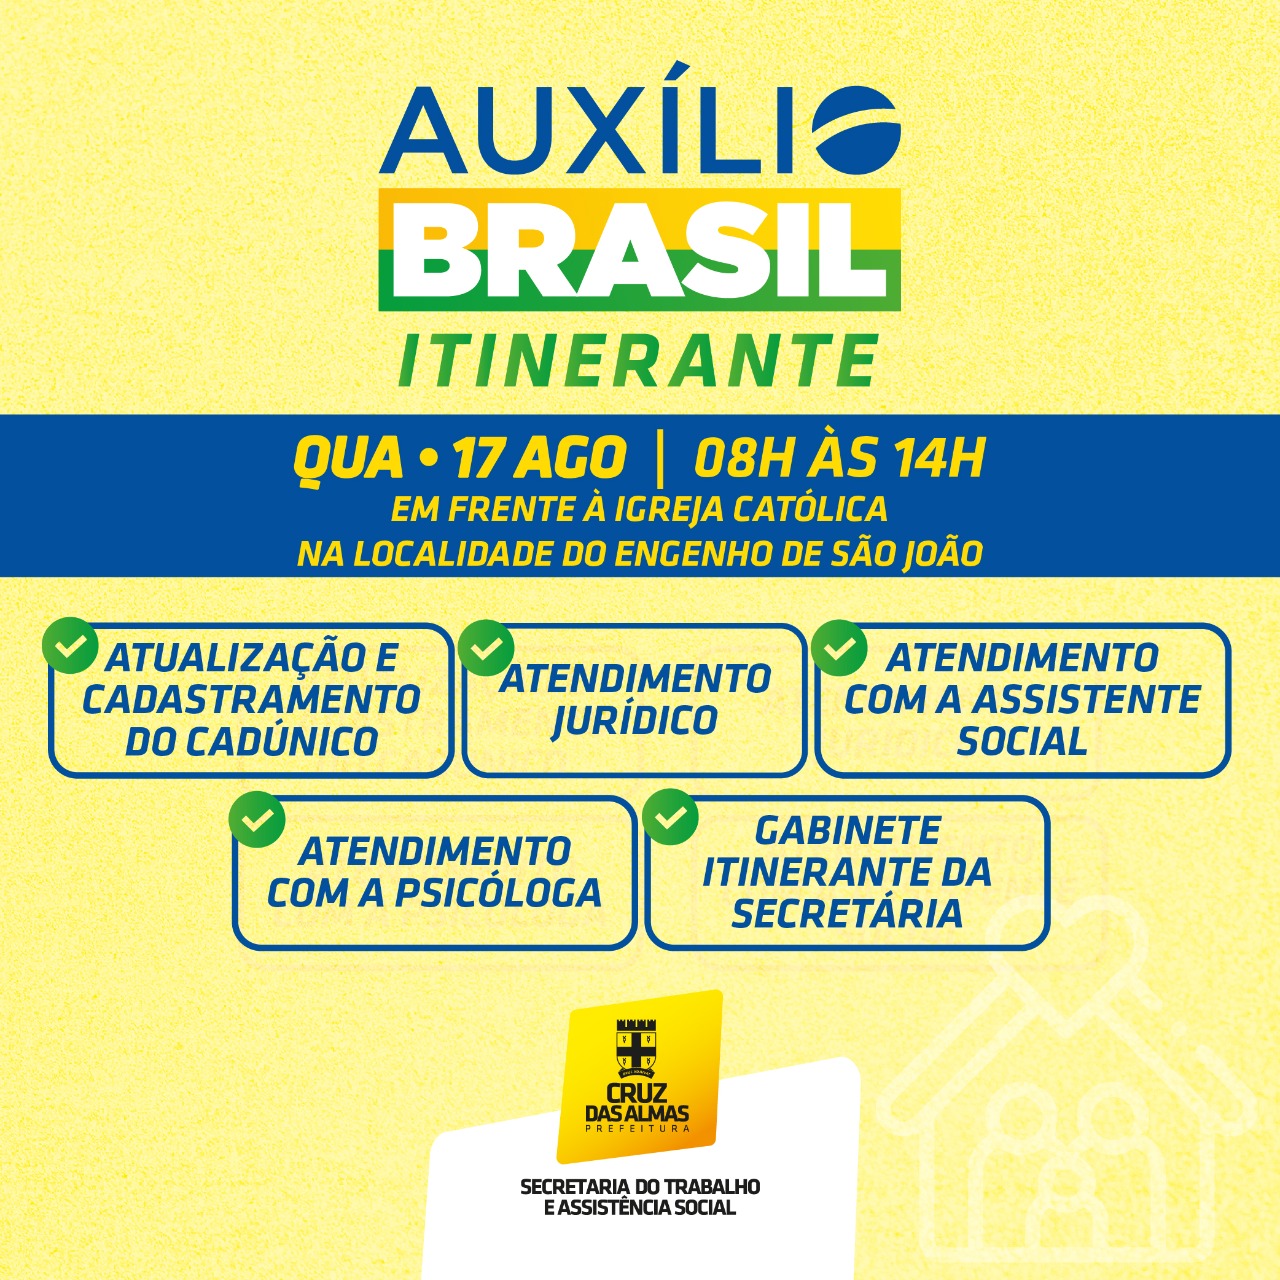 Comunidade do Engenho de São João vai receber o Auxílio Brasil Itinerante